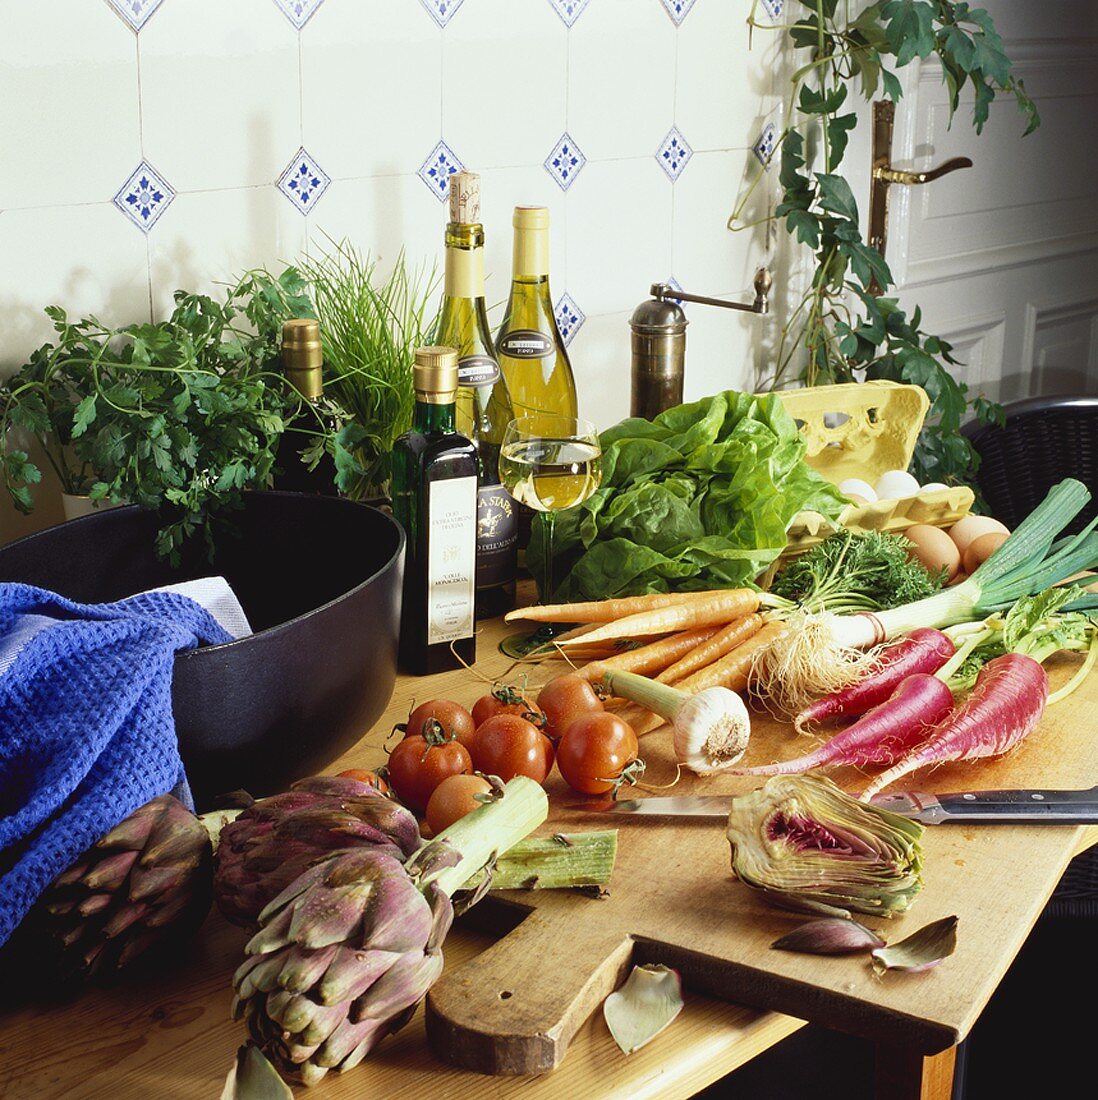 Gemüse, Kräuter und andere Lebensmittel in einer Küche